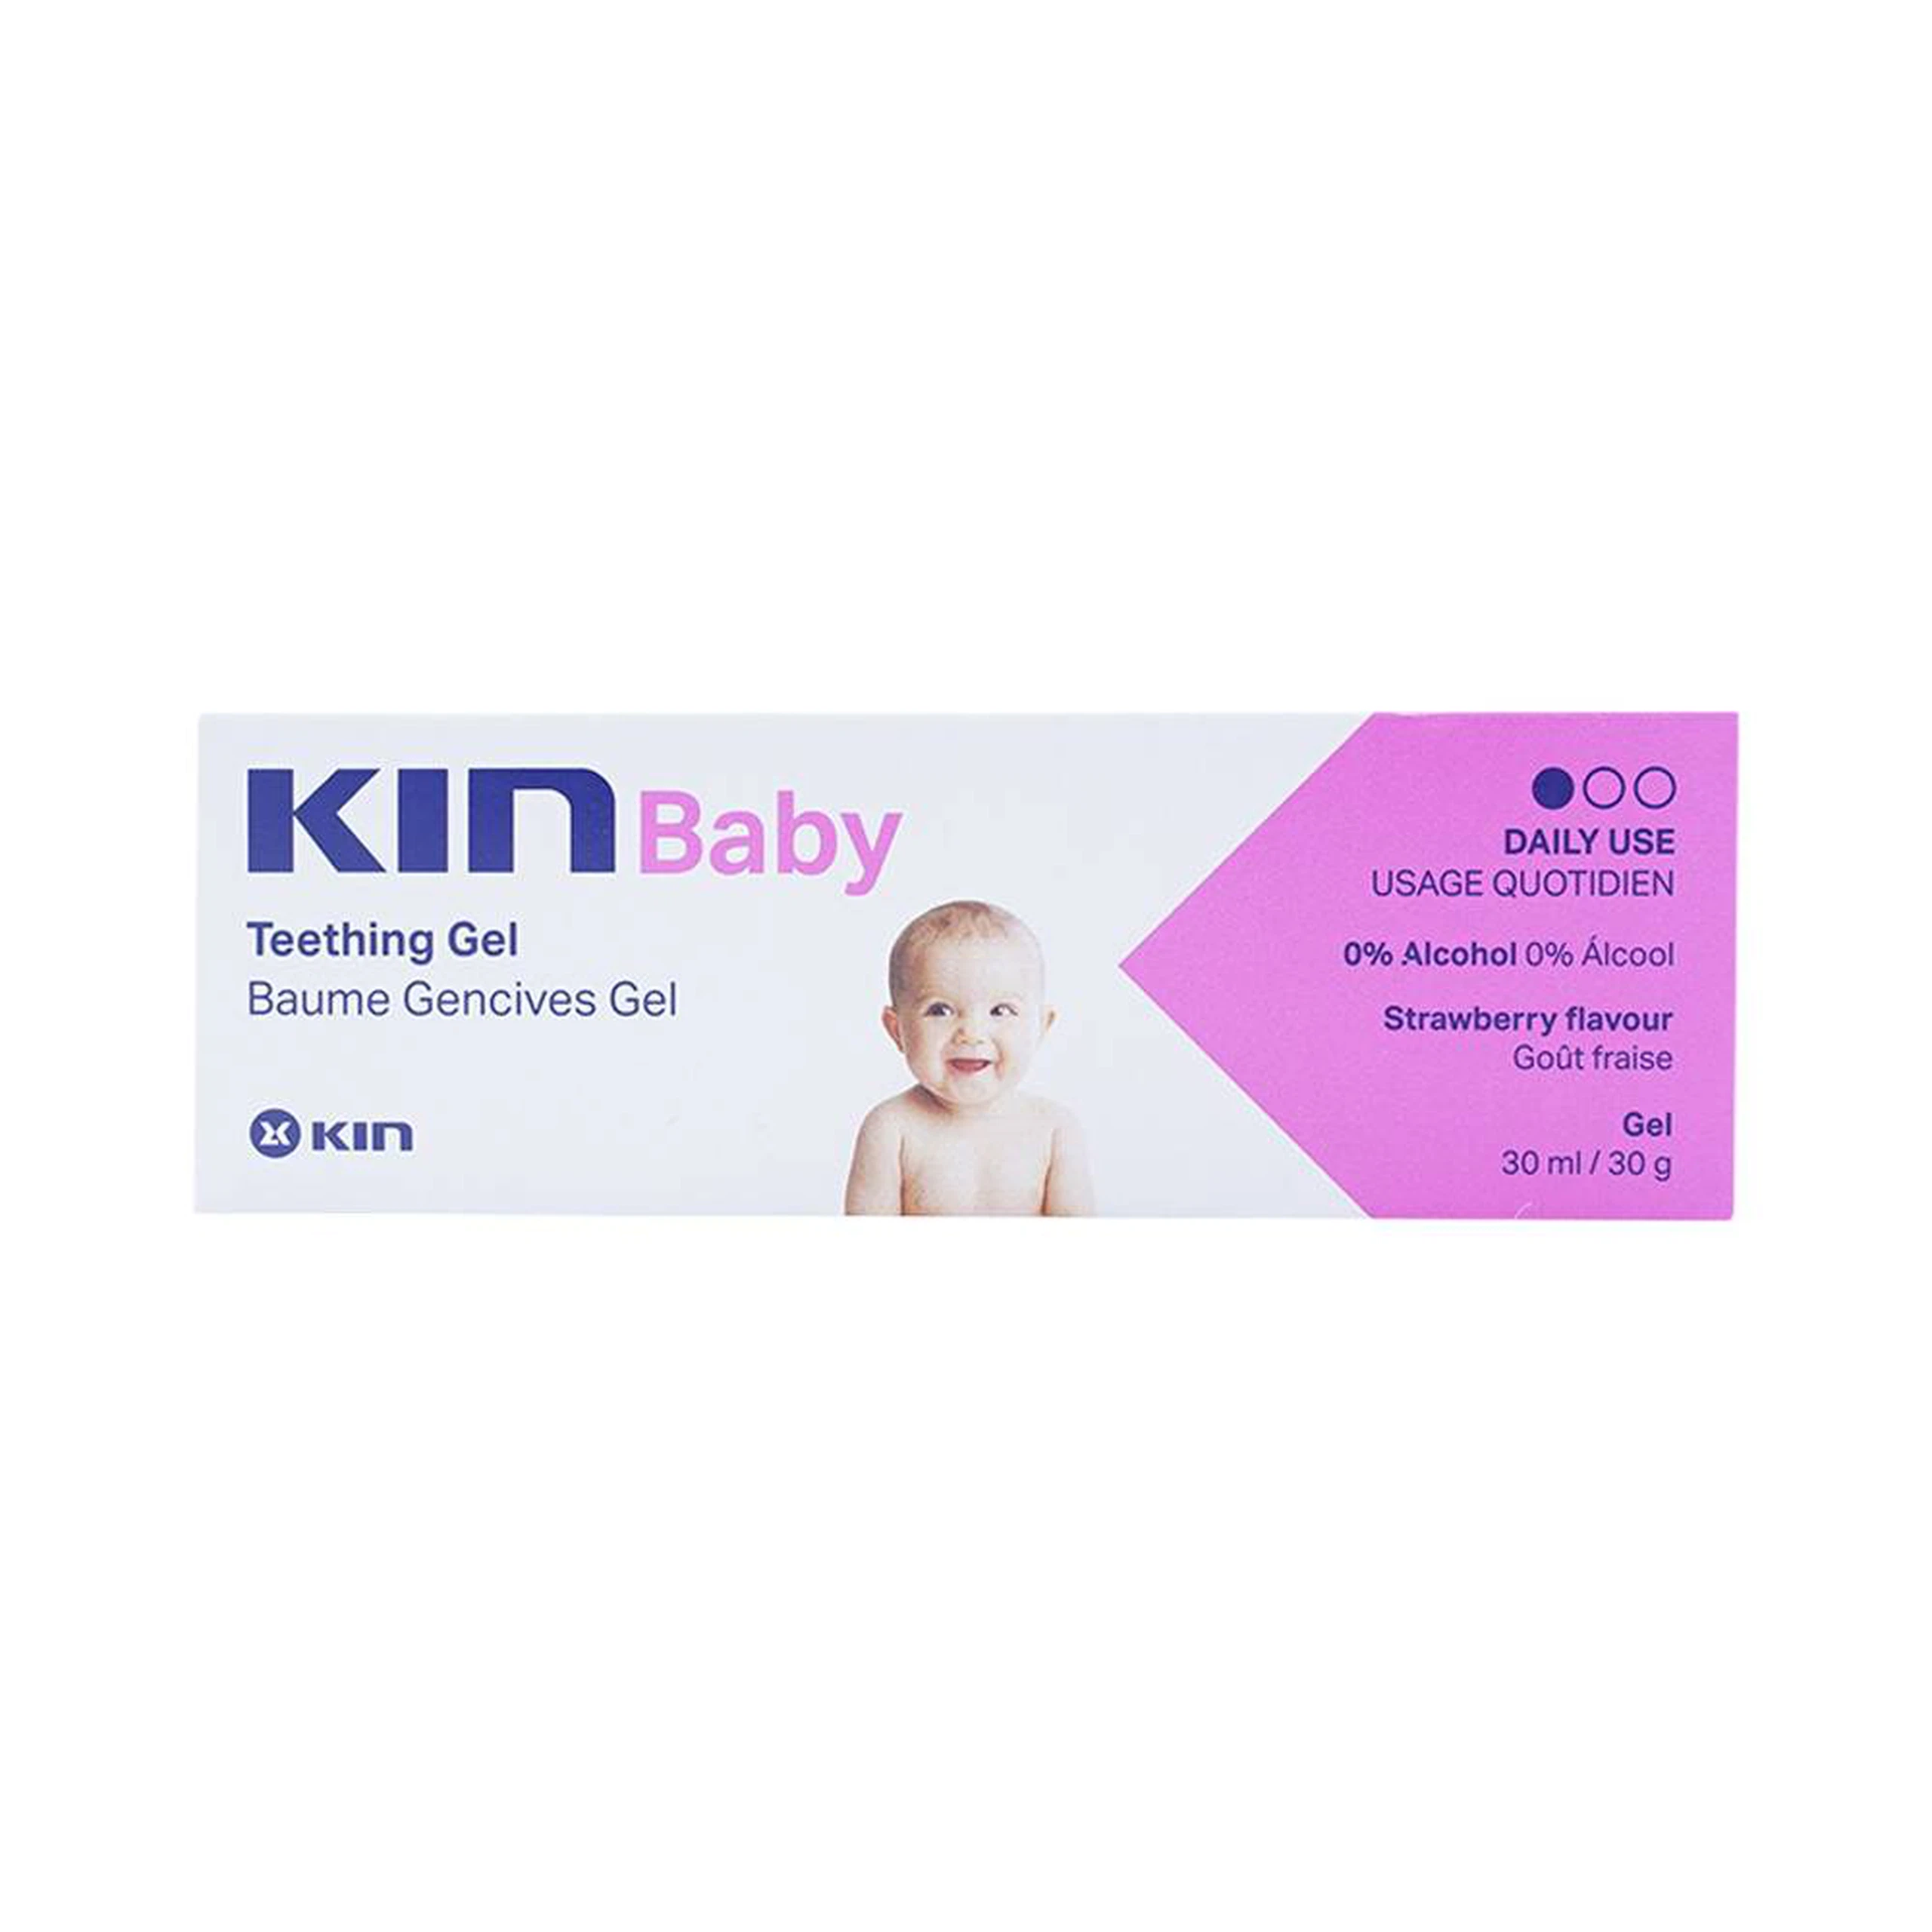 Gel Kin Baby Teething giảm đau sưng lợi và bảo vệ nướu không bị tổn thương (30ml)